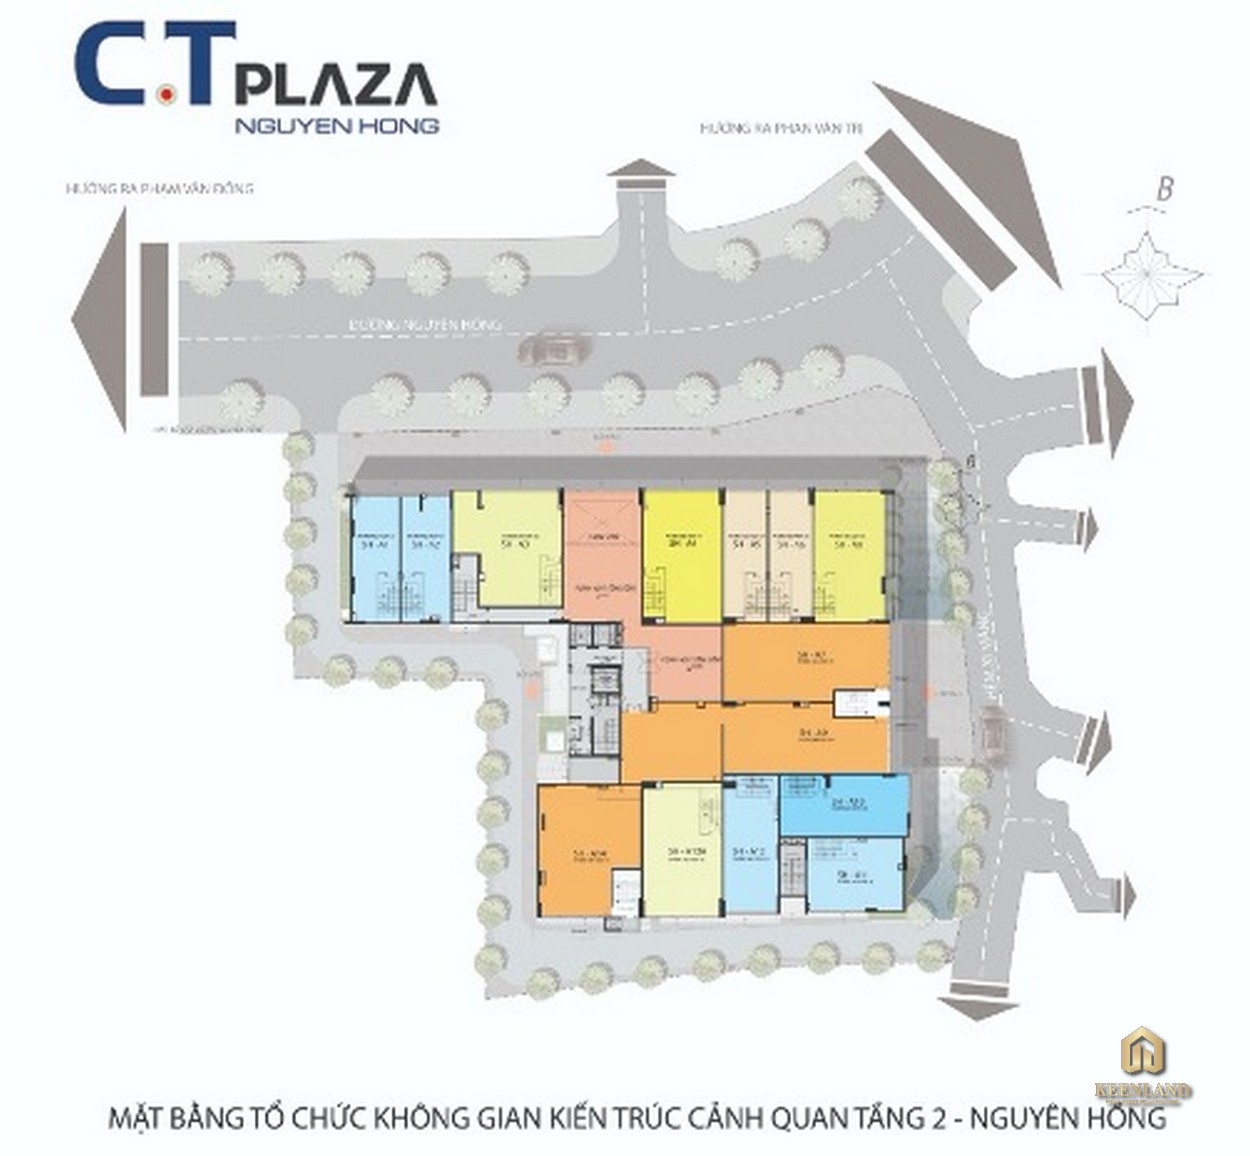 Mặt bằng tầng 2 dự án CT Plaza Nguyên Hồng